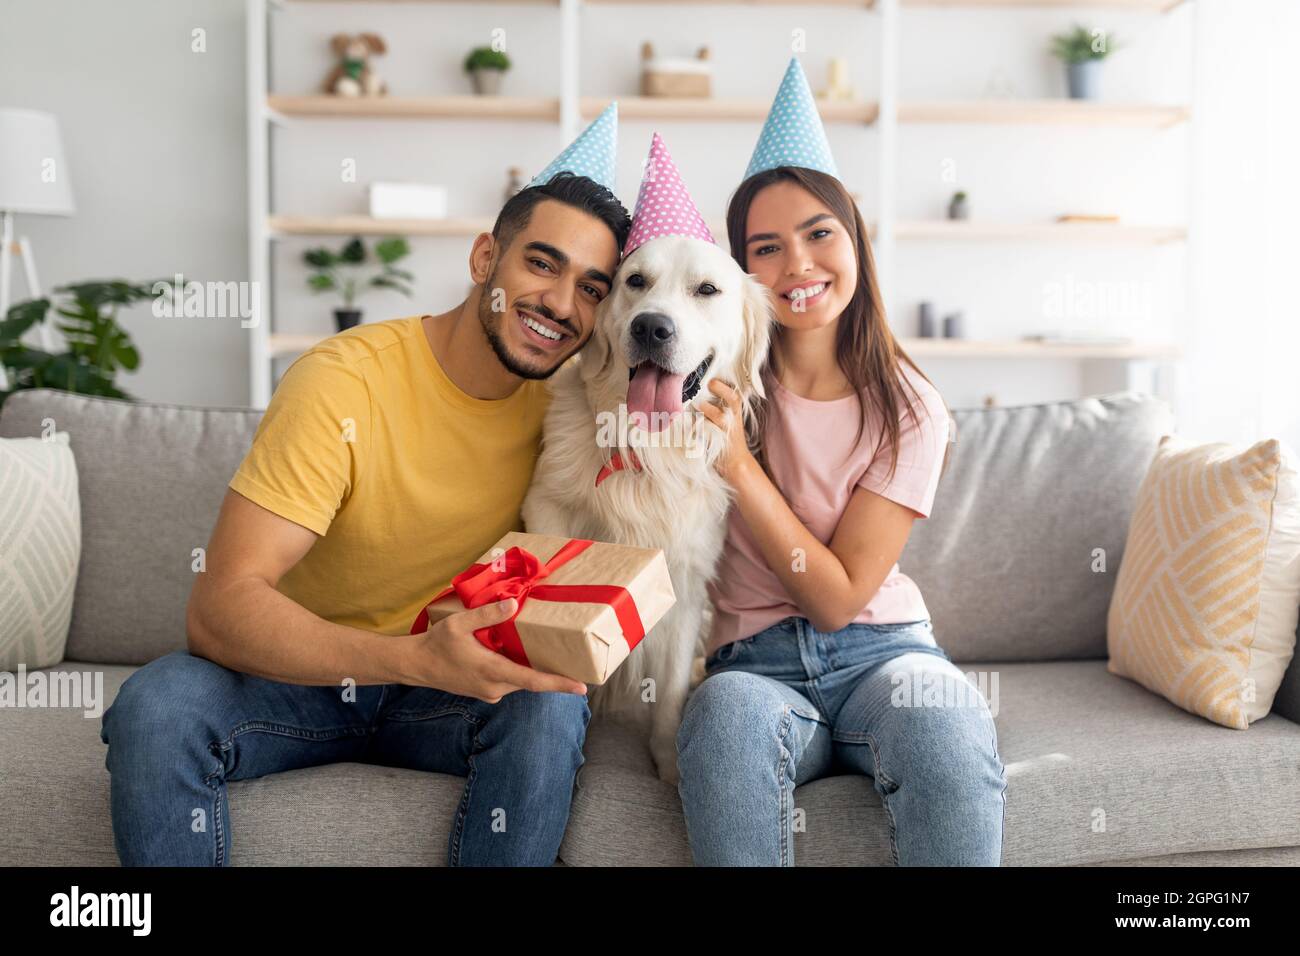 Felice coppia variegata celebrare il compleanno del loro cane del animale domestico, sedendosi sul divano con la scatola del regalo, portando i cappelli di festa nel paese Foto Stock